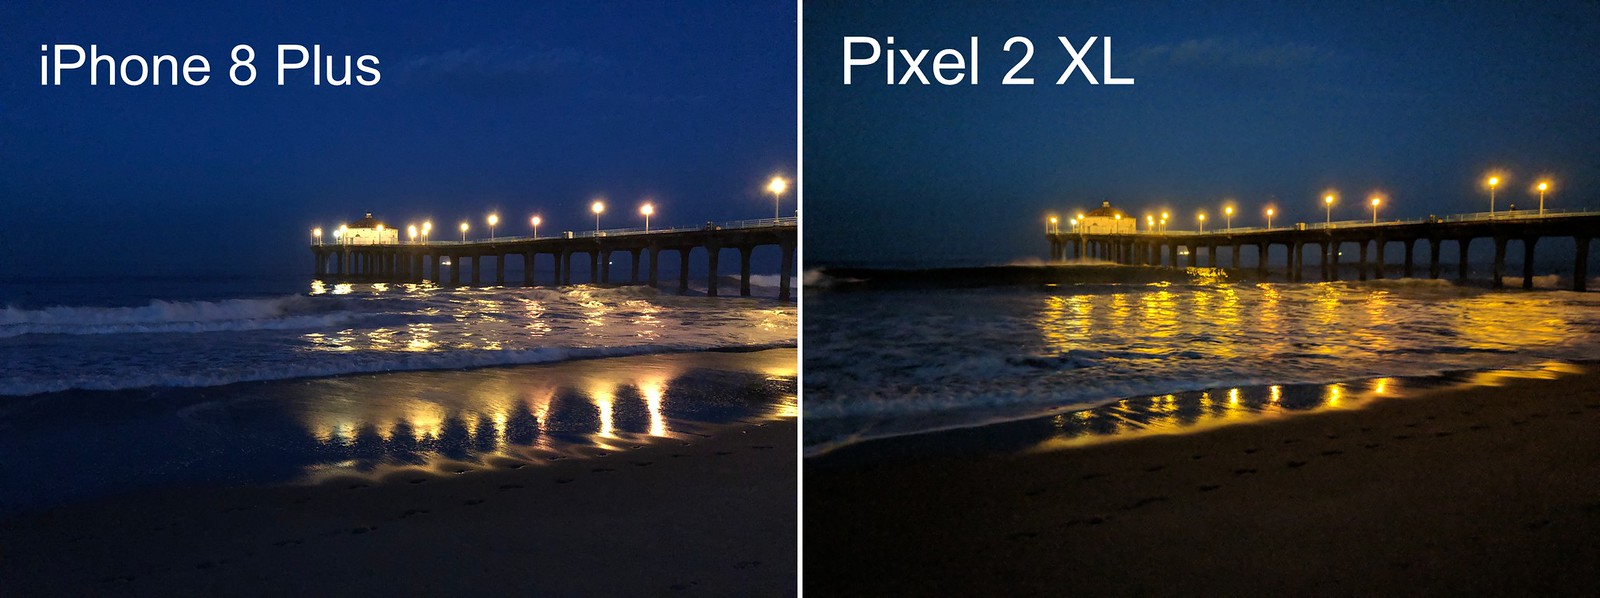 Comparativo de câmeras entre iPhone 8 Plus e Google Pixel 2